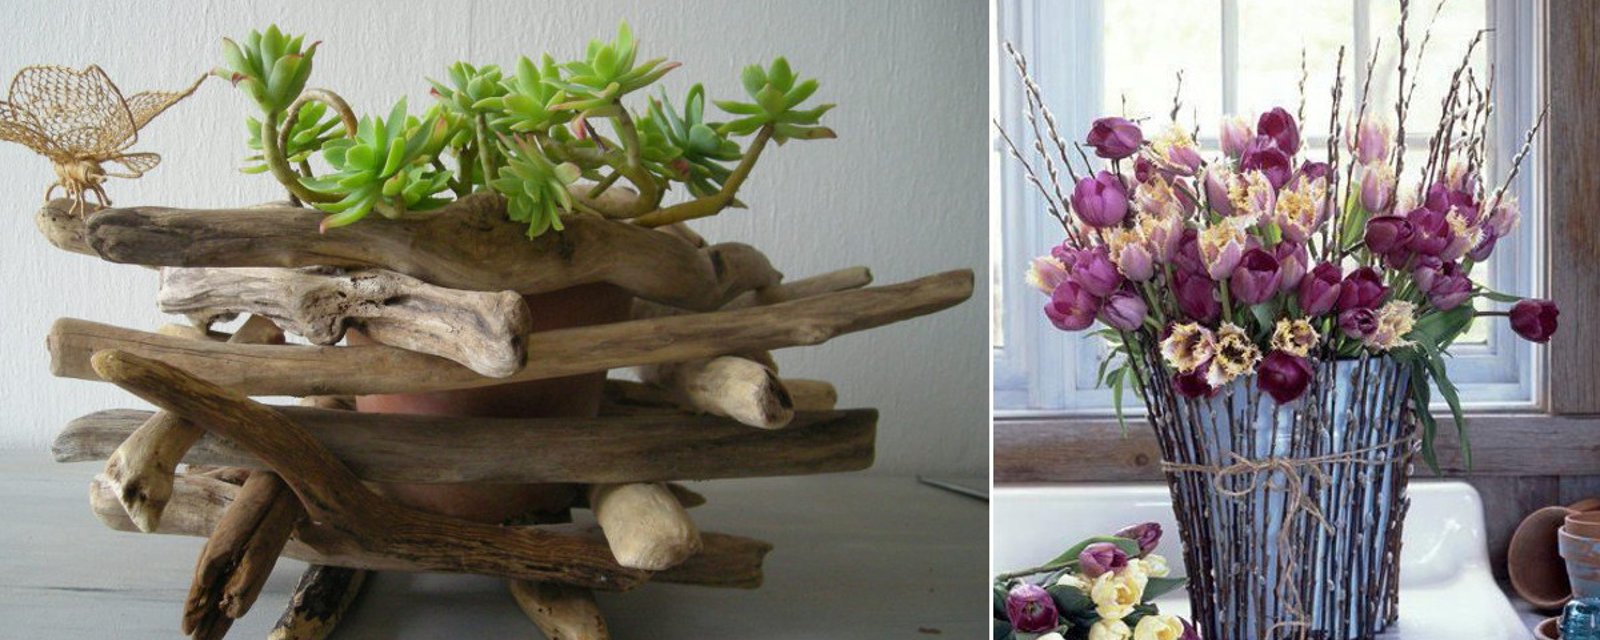 14 belles façons de fabriquer des cache-pots avec des brindilles ou du bois flotté